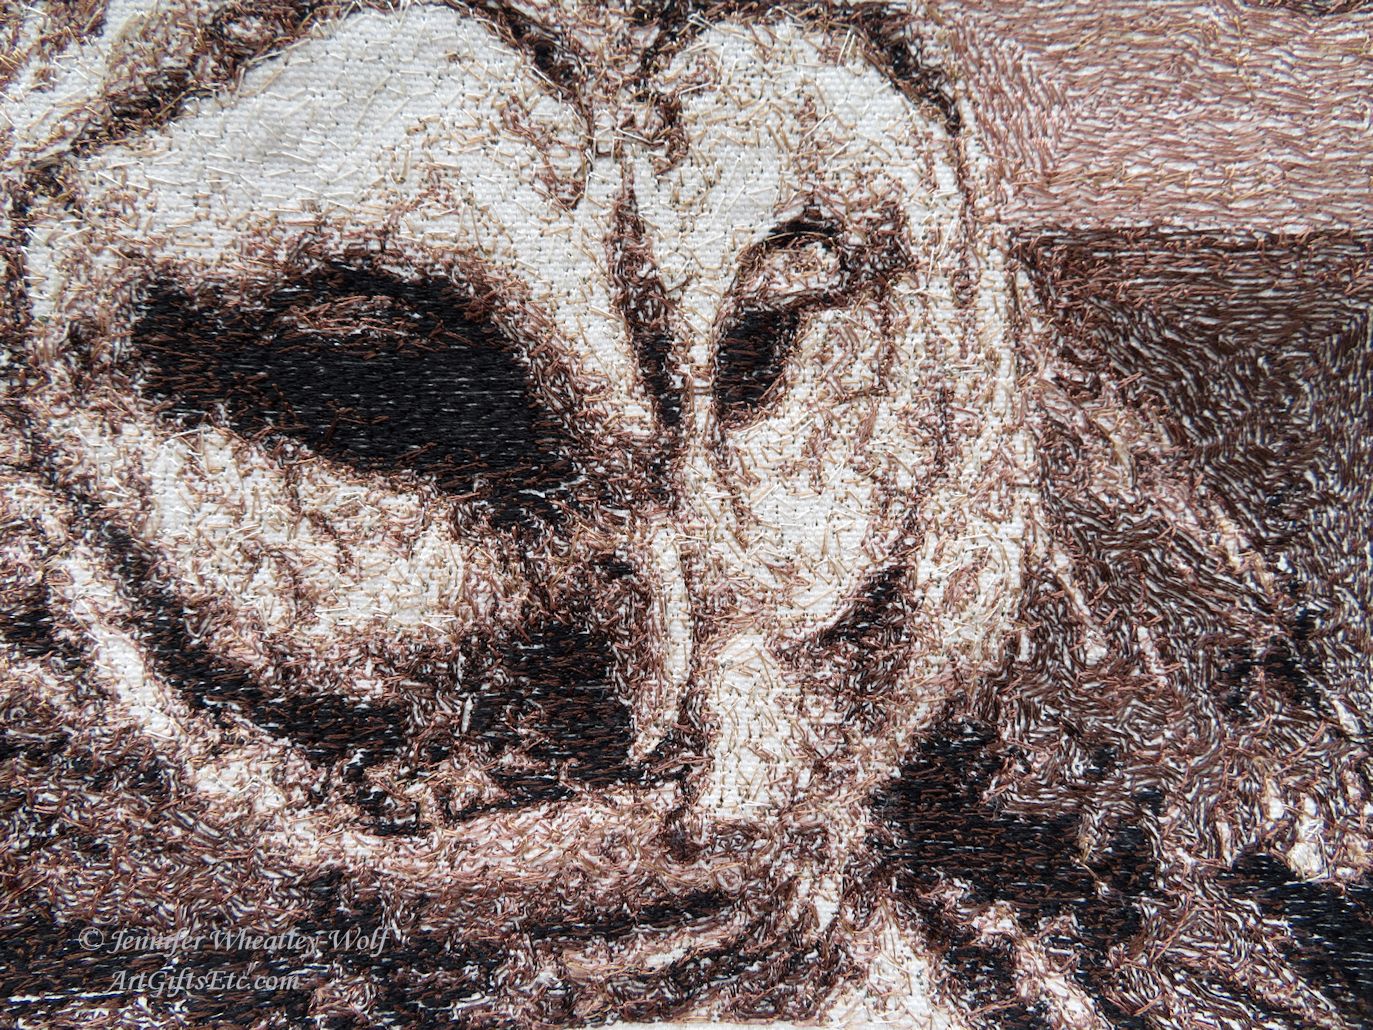 owl-sfumato-embroidery-Jennifer-Wheatley-Wolf